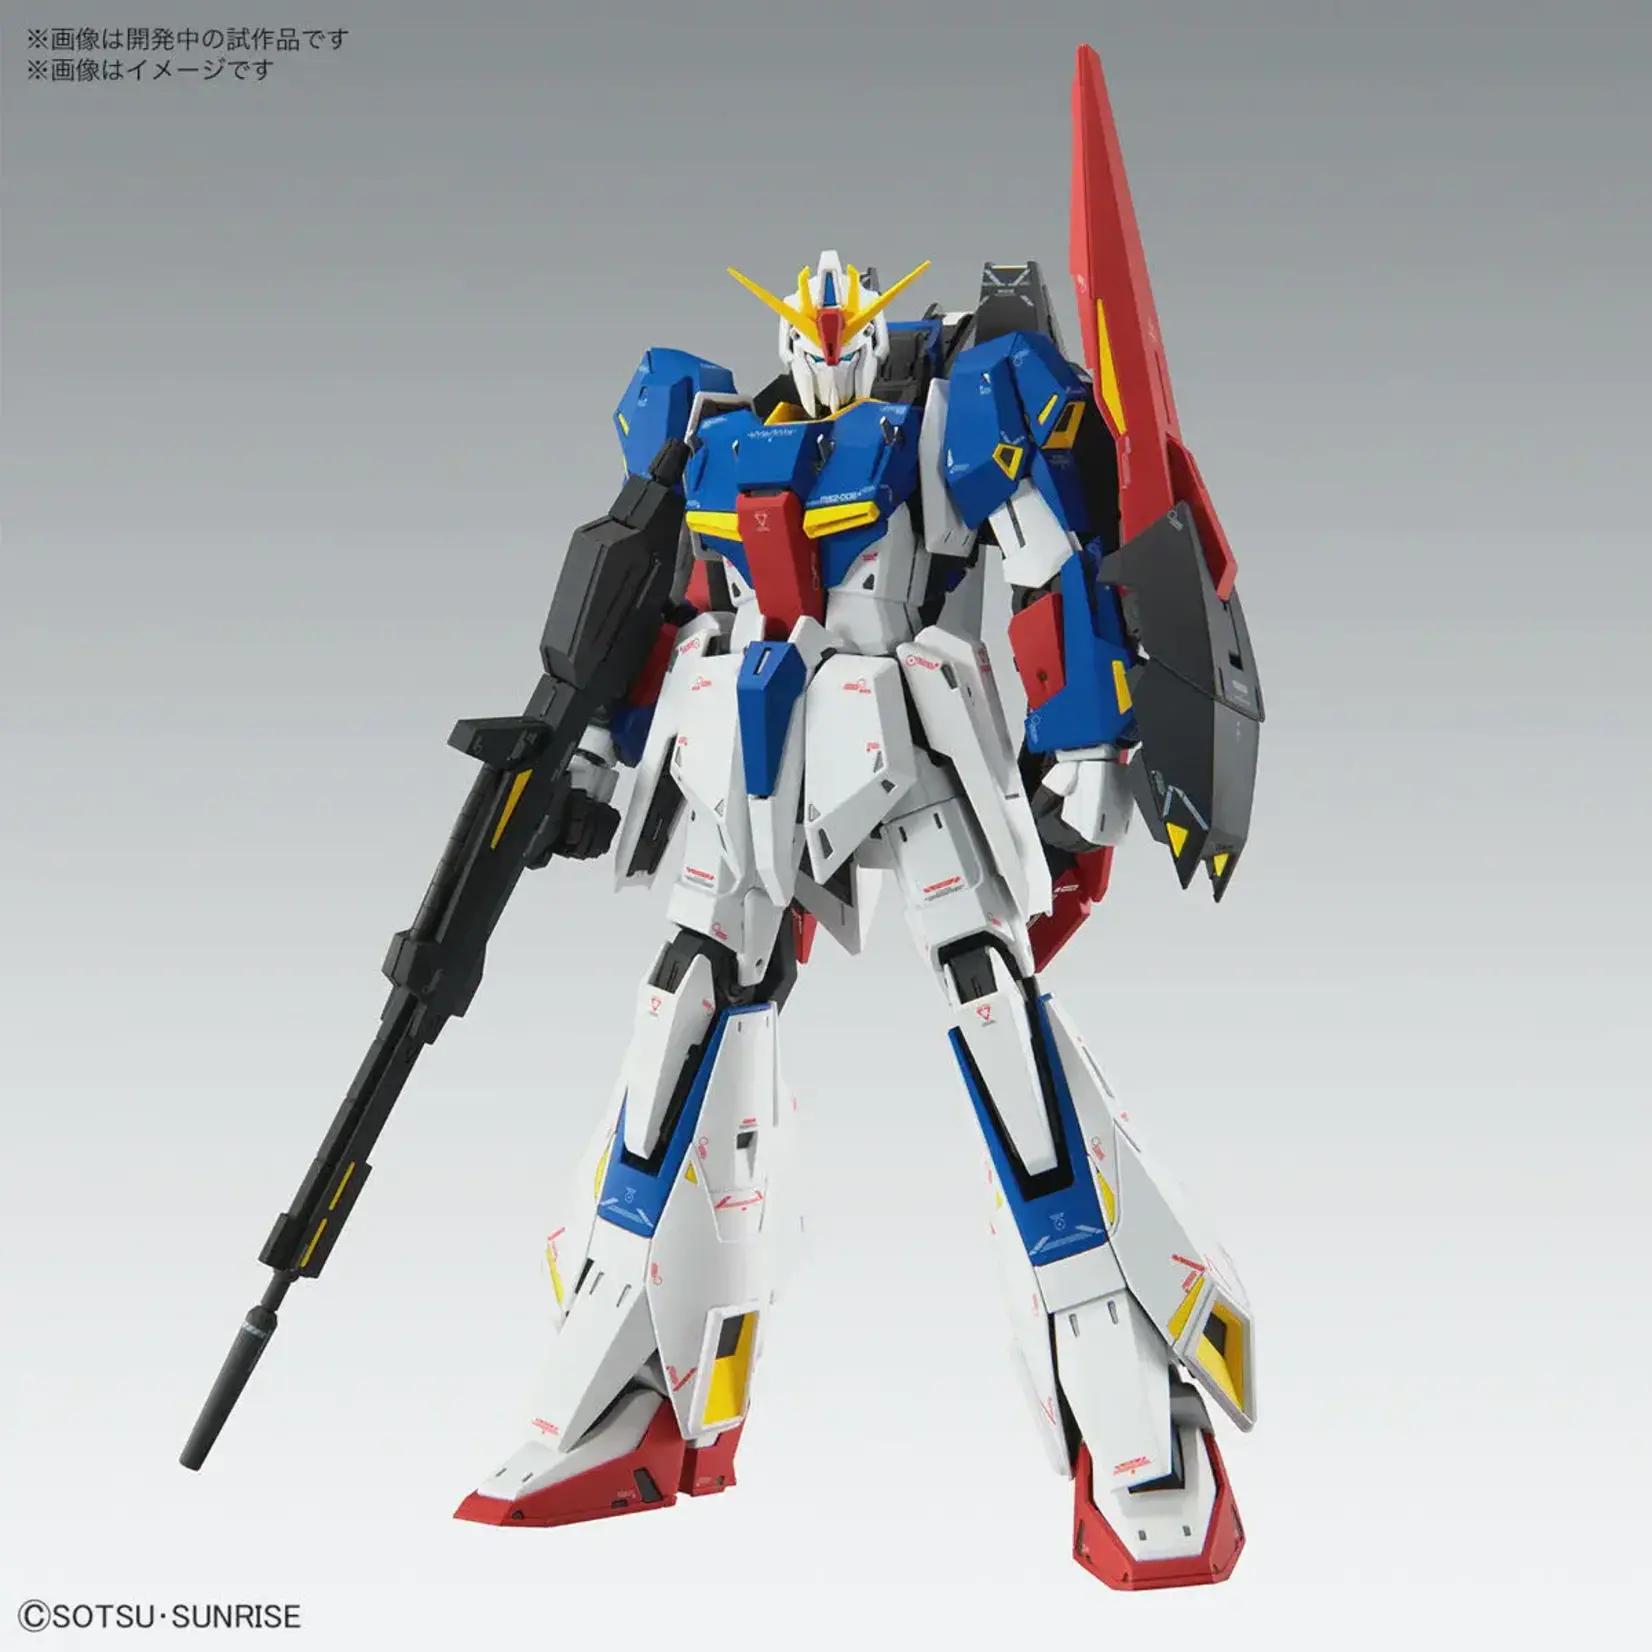 Bandai Bandai 2615240 MG Zeta Gundam (Ver. Ka) "Mobile Suit Zeta Gundam"